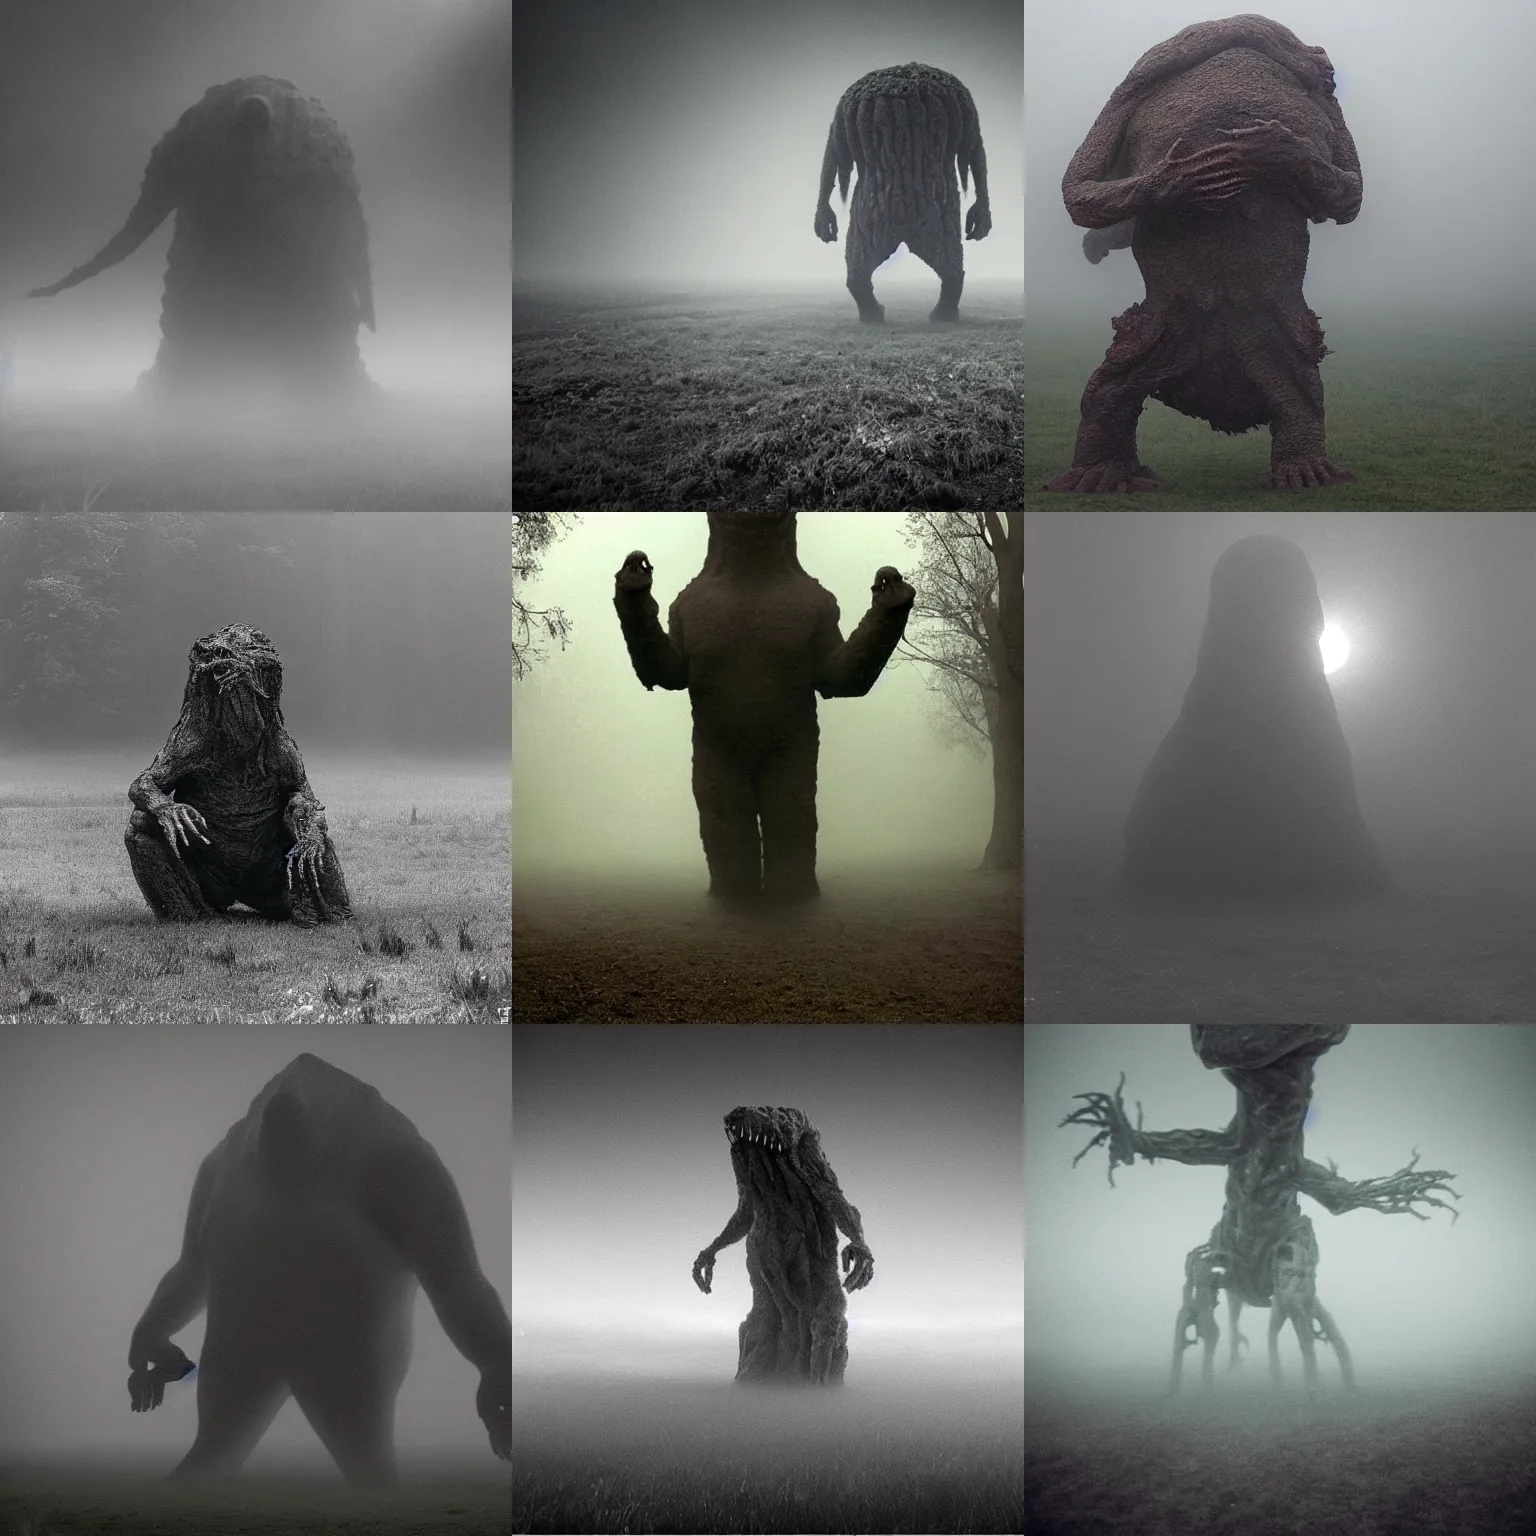 the mist giant monster